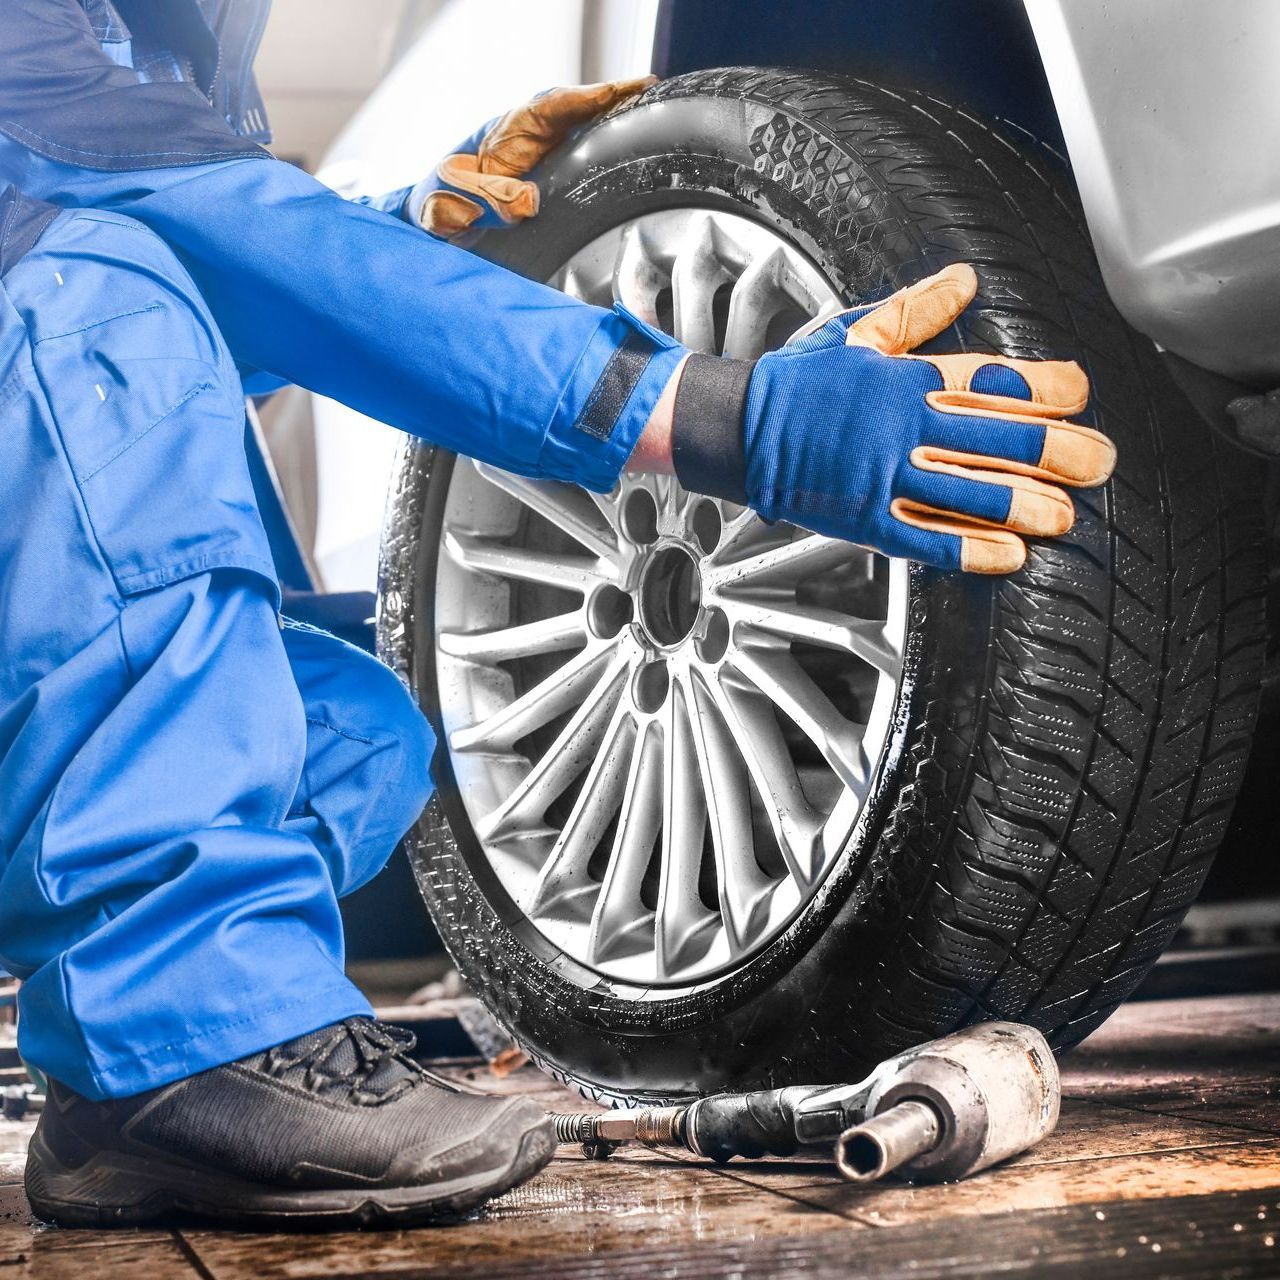 Un garagiste pose ses mains sur le pneu d'une voiture